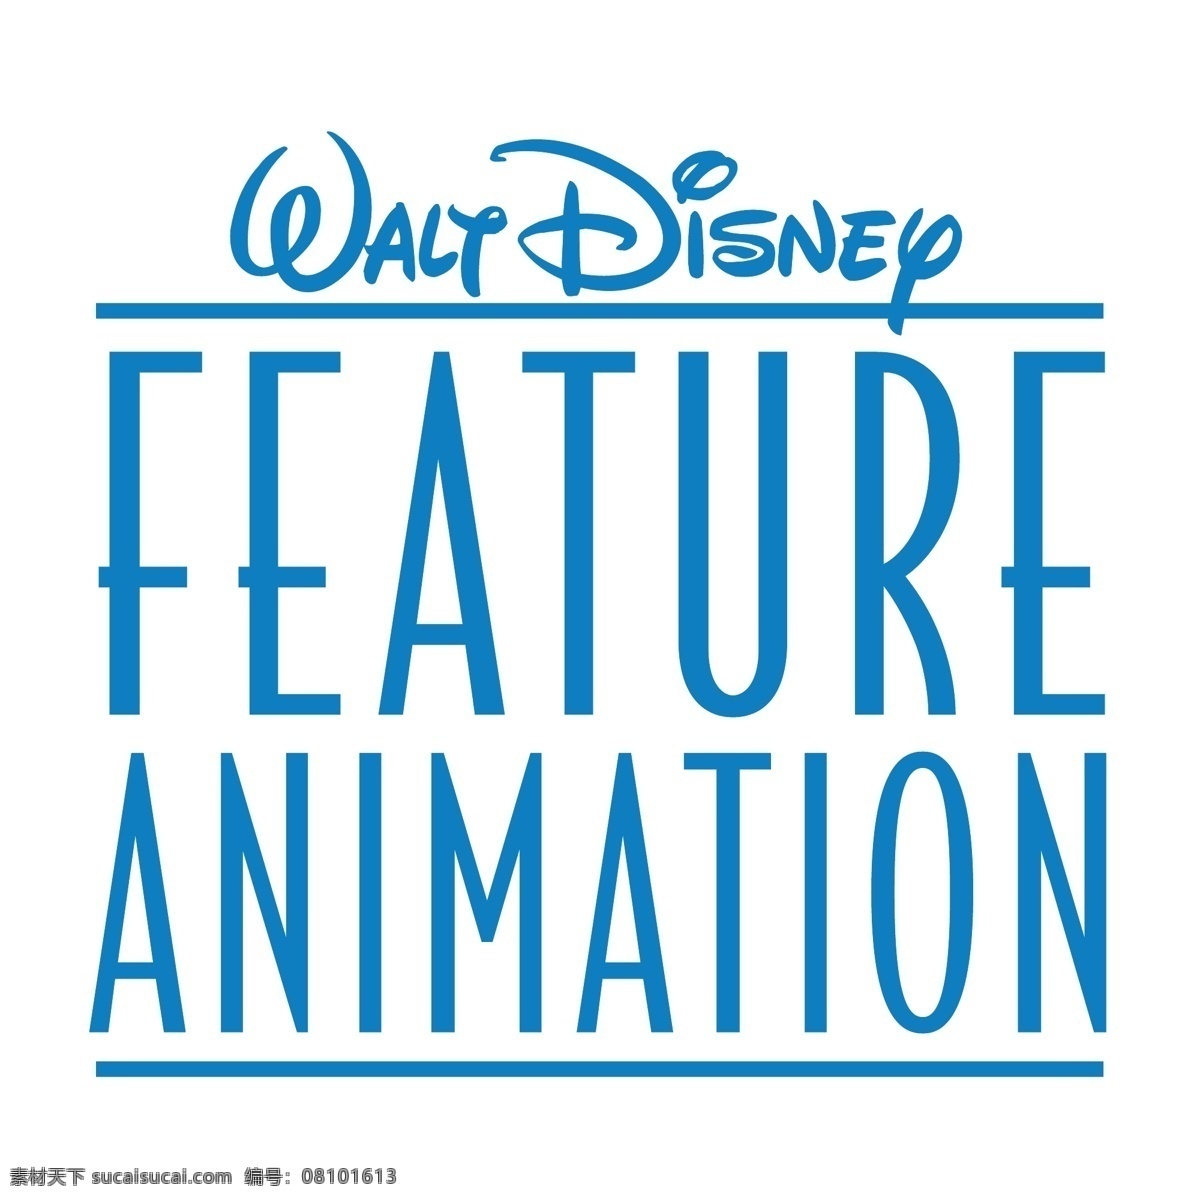 沃尔特 沃尔特迪士尼 迪士尼 迪士尼的特点 特征 特色的动画 动画 迪士尼动画 免费 矢量 迪士尼eps 迪士尼的图像 矢量图 白色